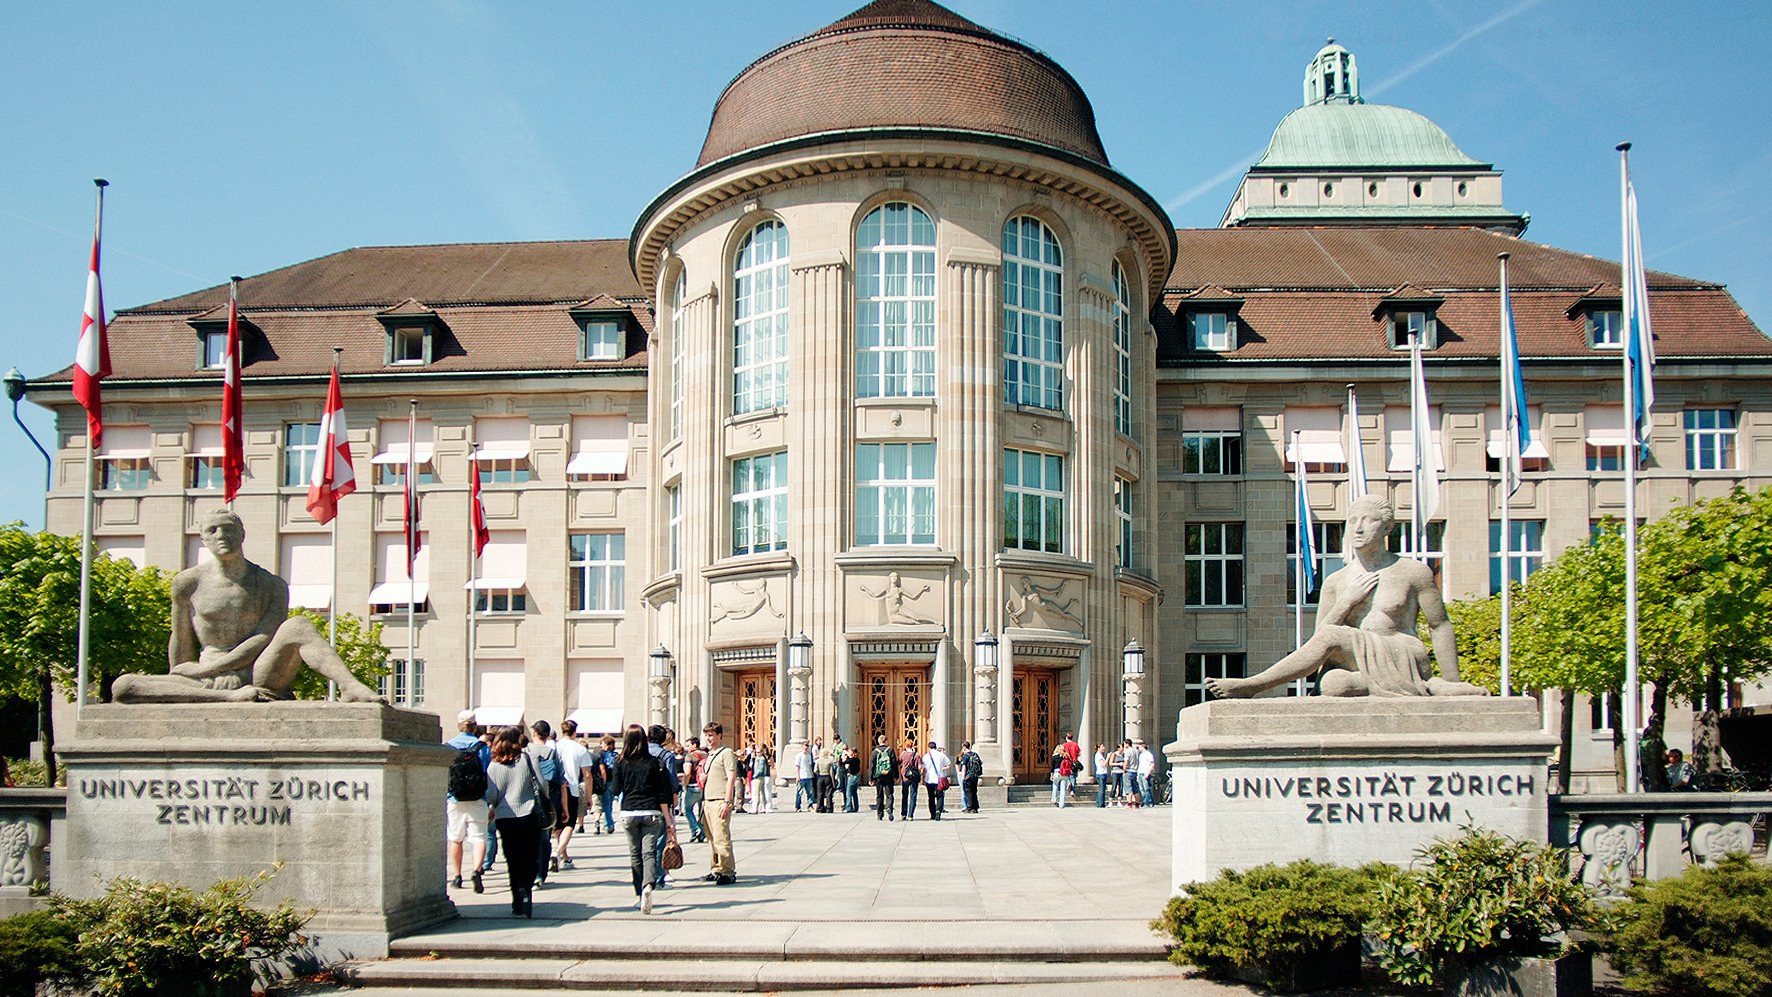 Universität Zürich von aussen (c) Universität Zürich; Frank Brüderli